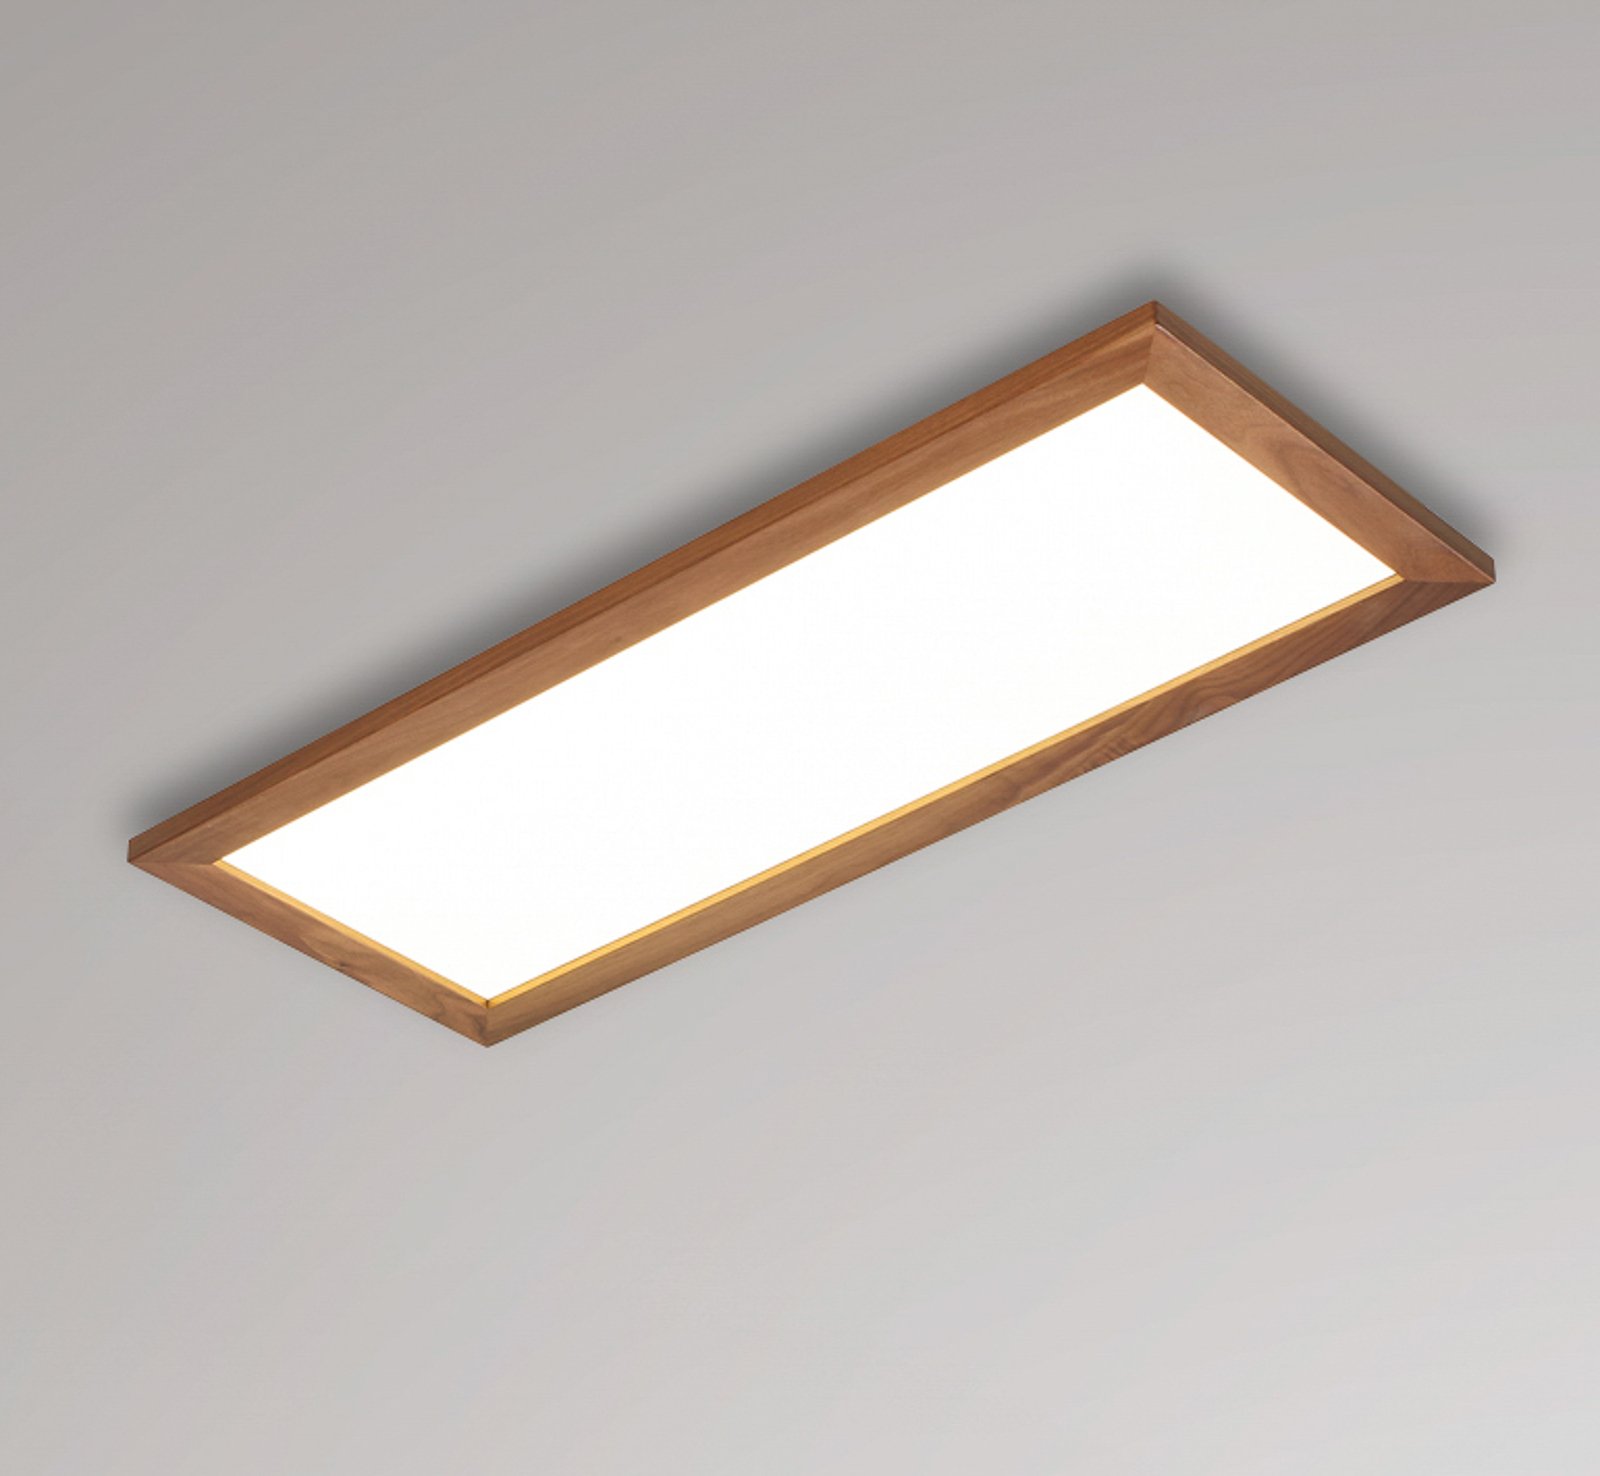 Quitani Aurinor LED paneel, walnoot, 86 cm